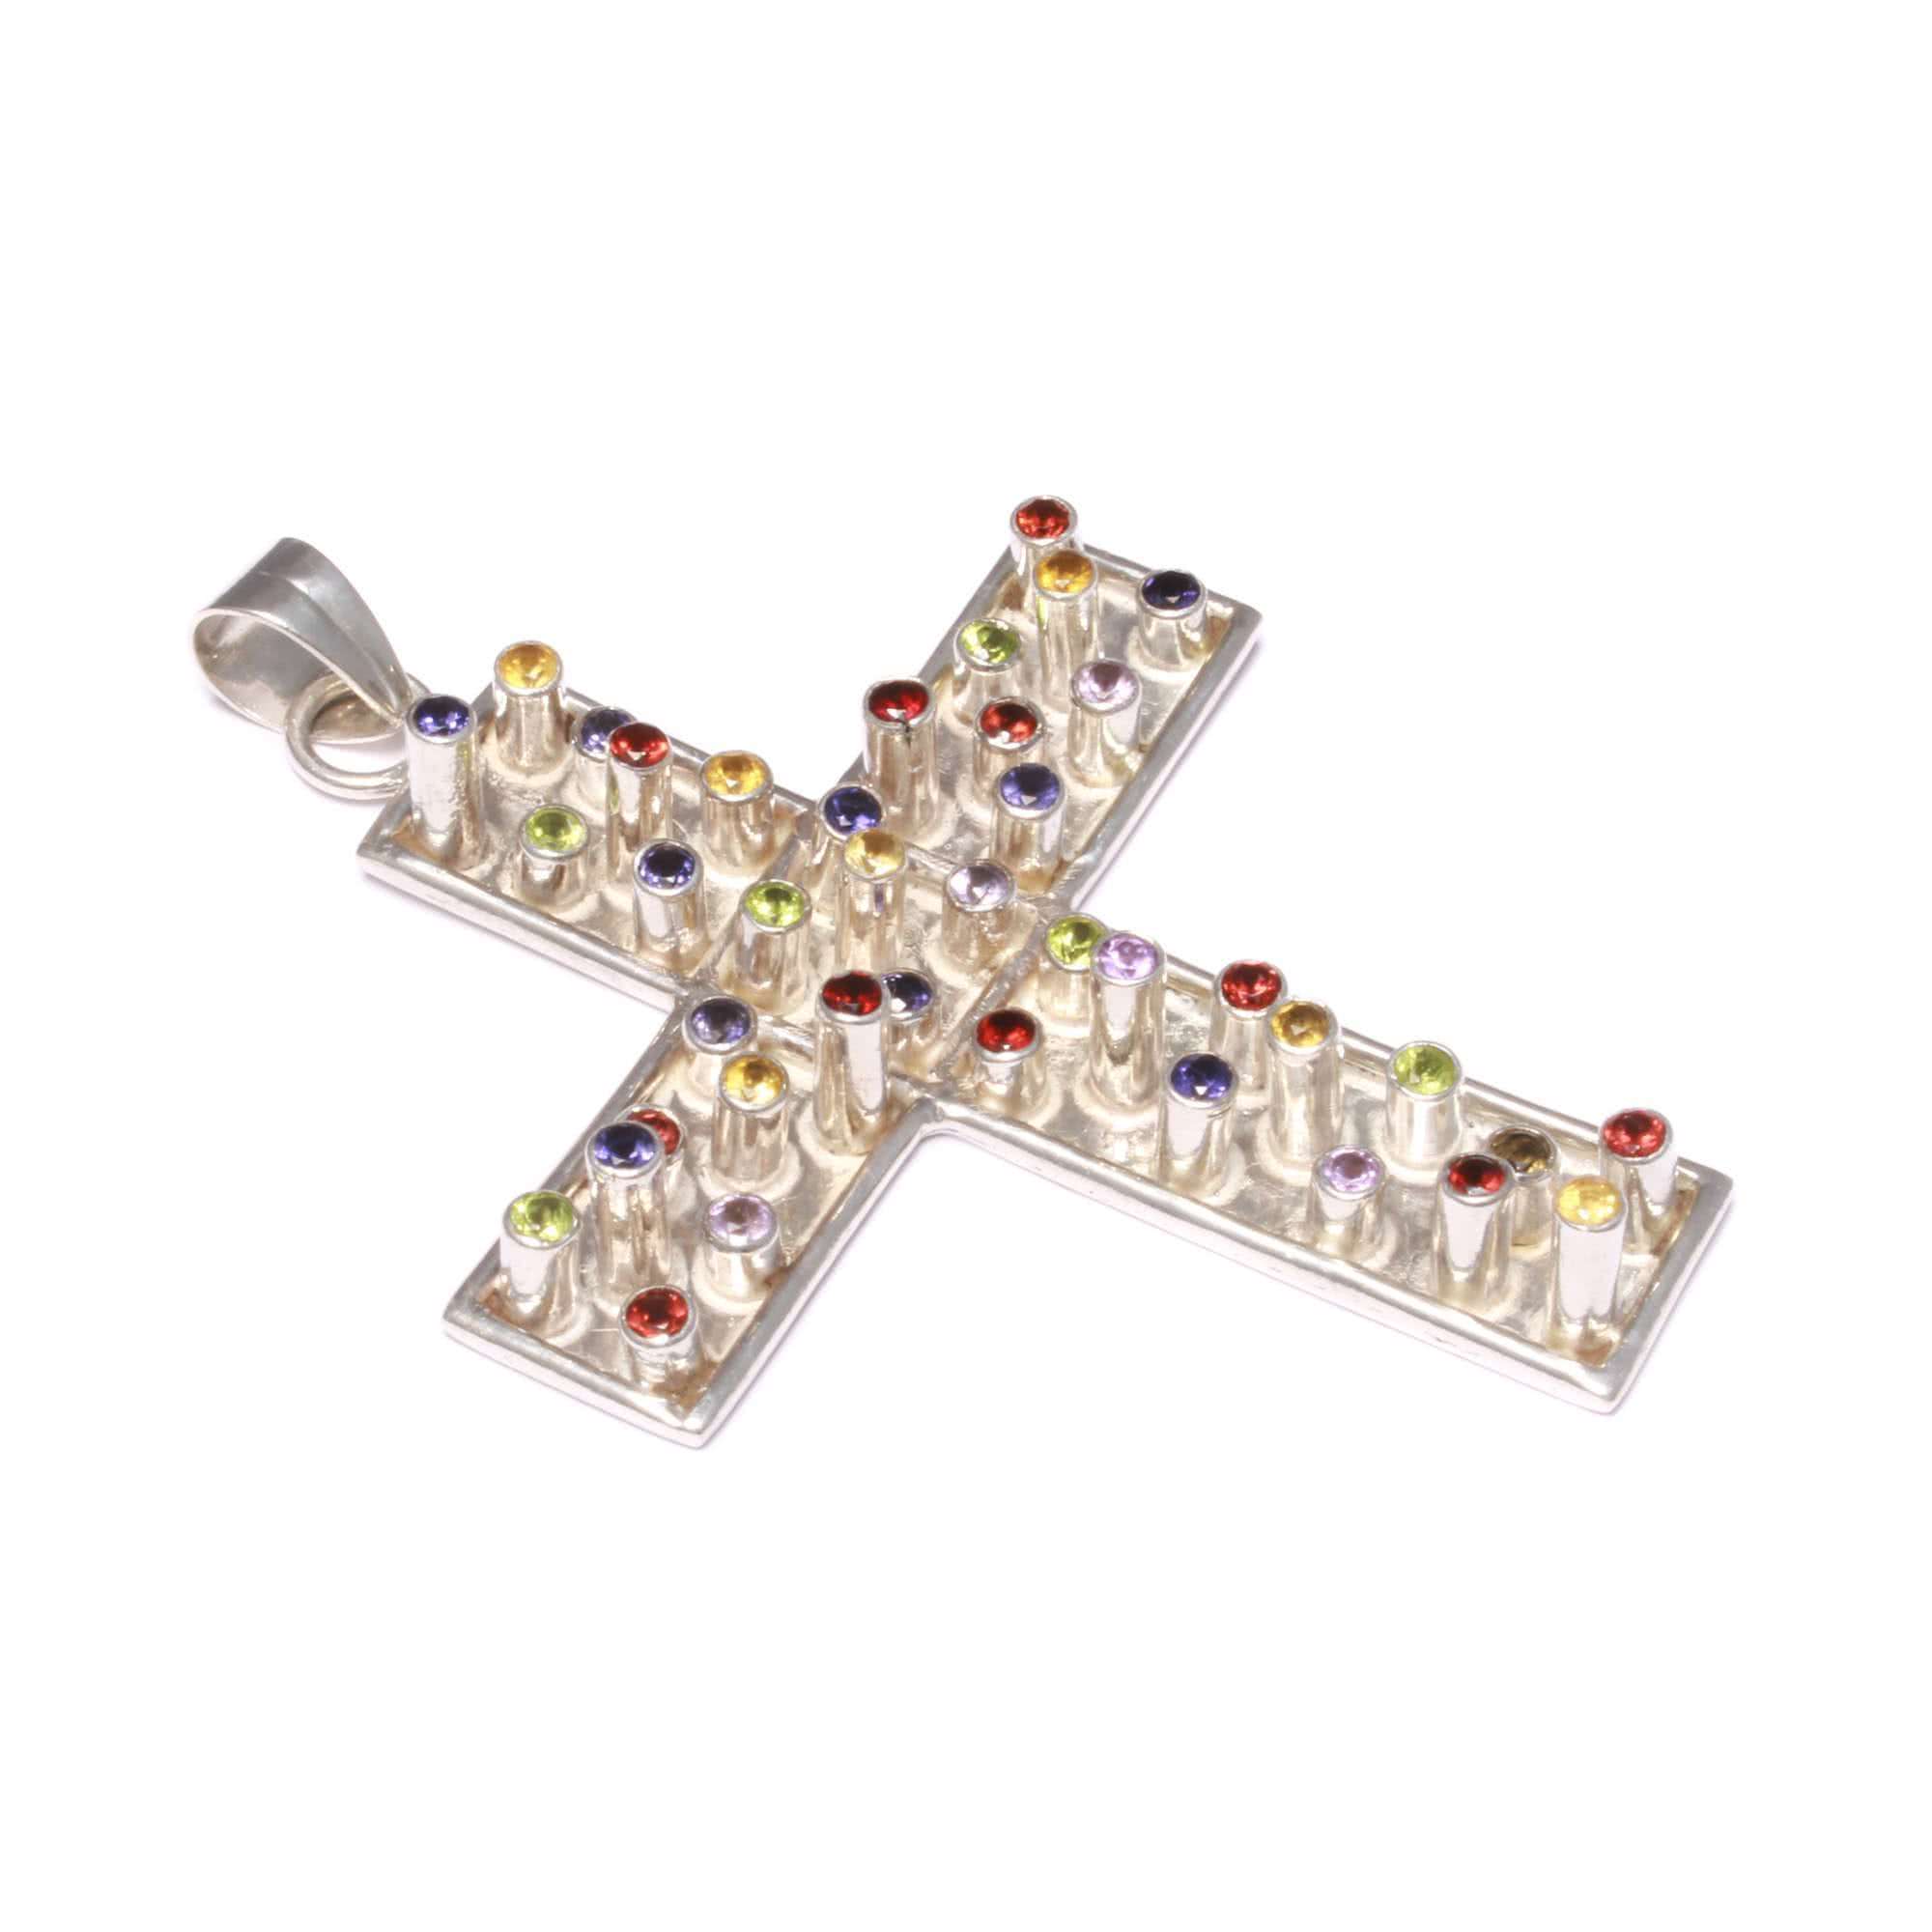 Imposanter Edelstein Kreuz Anhänger aus 925 Sterling Silber - 2541 - Love  Your Diamonds